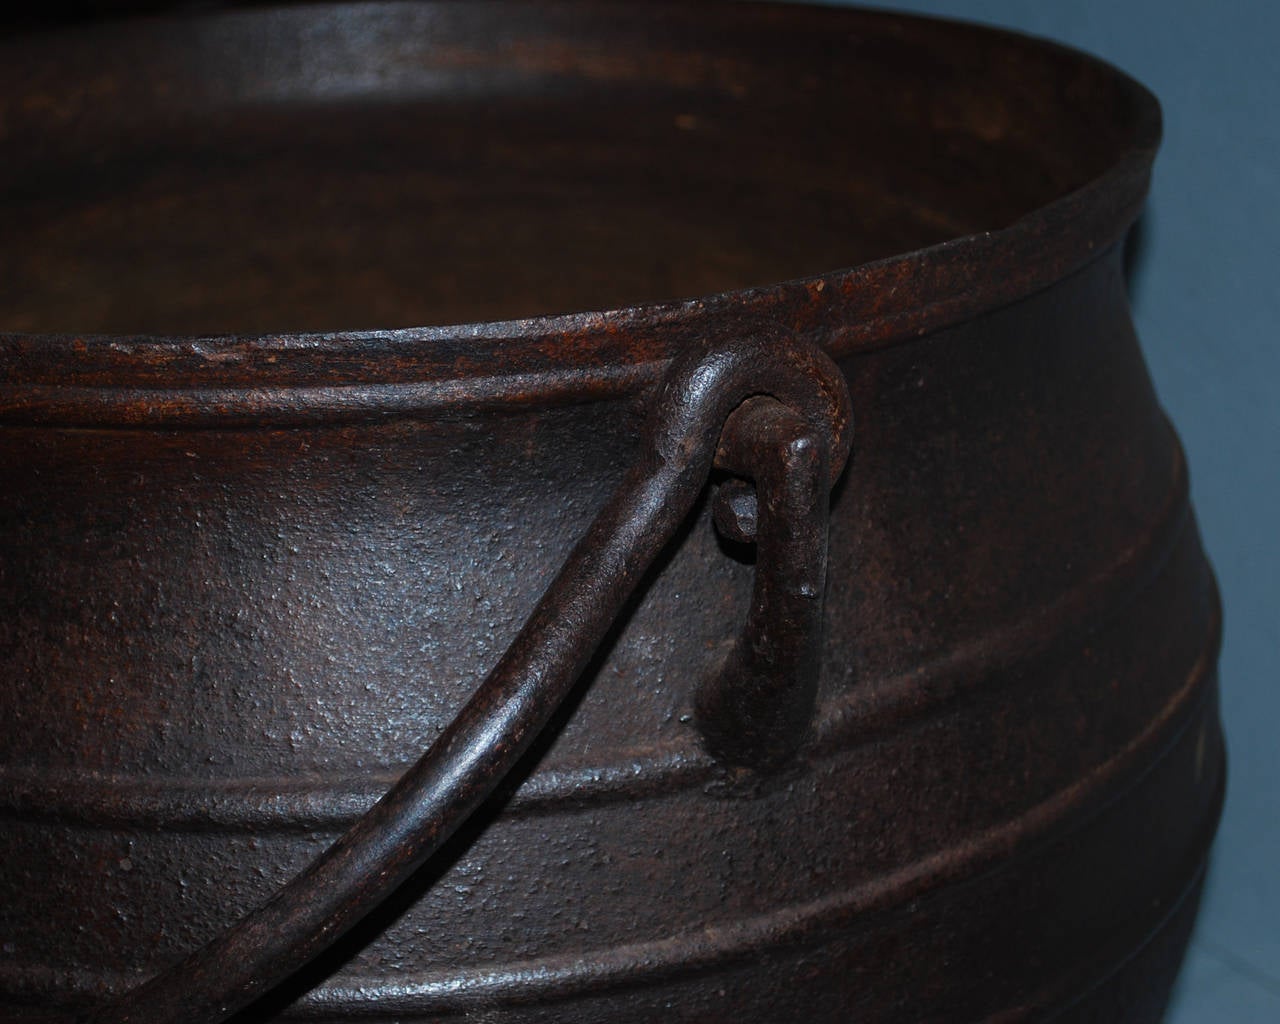 cast iron kettle pot